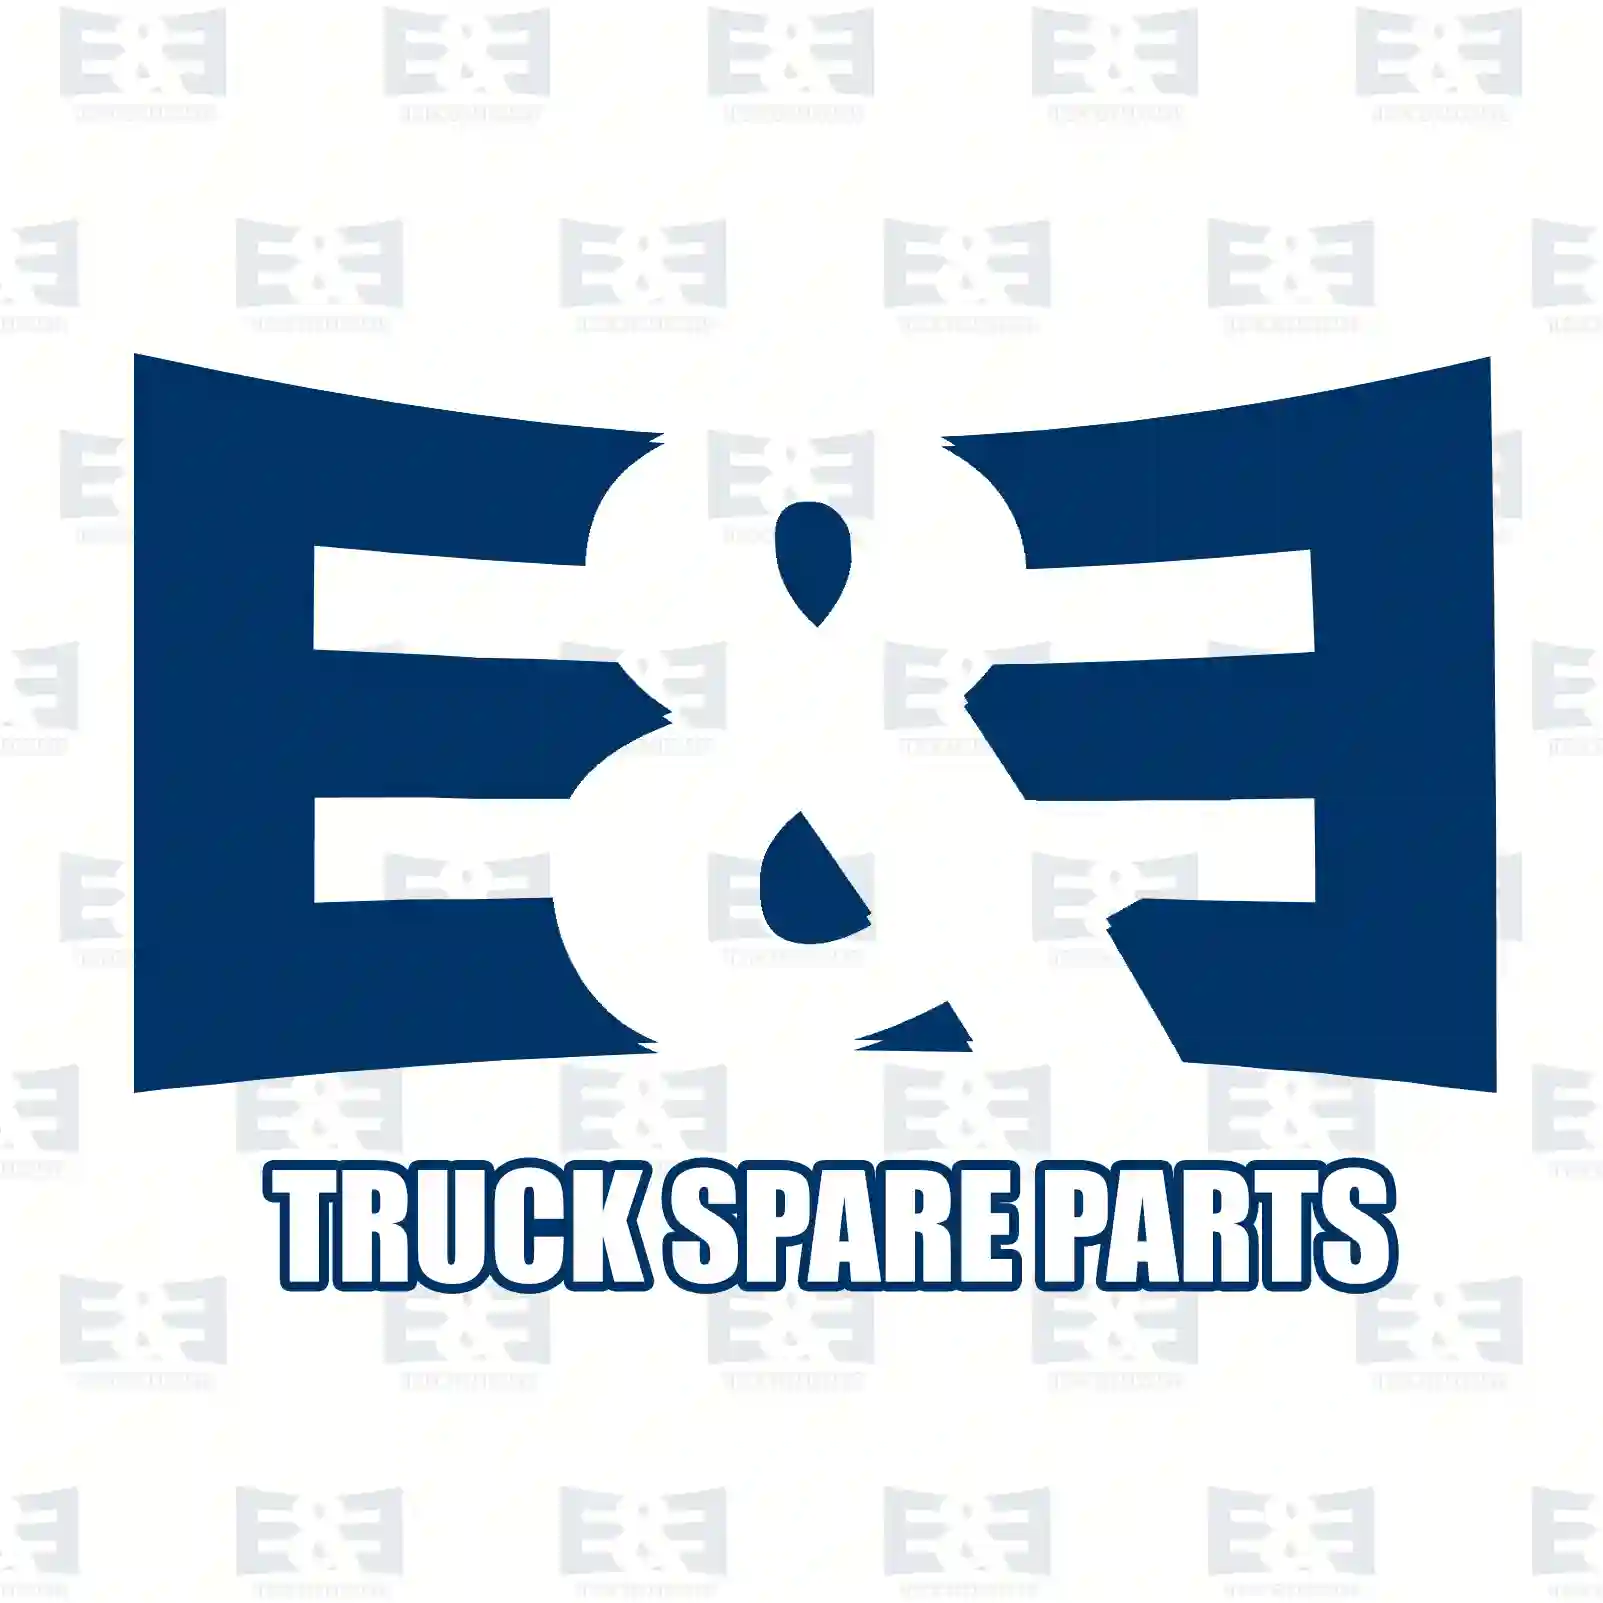 Oil seal, 2E2279177, 06562890361, 0179972847, 1300976, ZG02600-0008, ||  2E2279177 E&E Truck Spare Parts | Truck Spare Parts, Auotomotive Spare Parts Oil seal, 2E2279177, 06562890361, 0179972847, 1300976, ZG02600-0008, ||  2E2279177 E&E Truck Spare Parts | Truck Spare Parts, Auotomotive Spare Parts